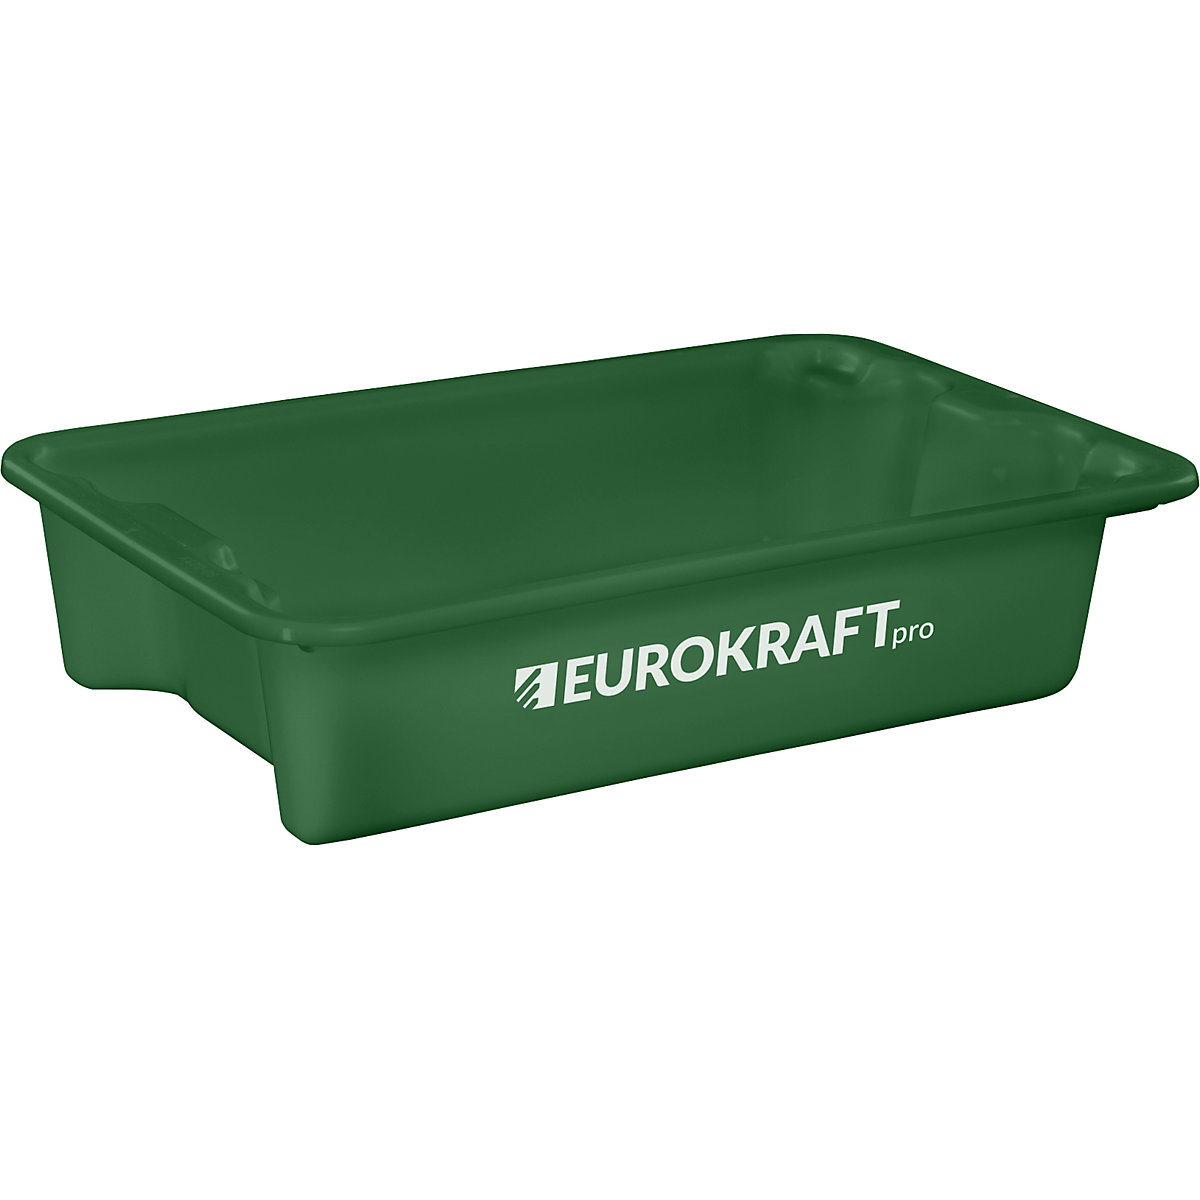 EUROKRAFTpro Drehstapelbehälter aus lebensmittelechtem Polypropylen, Inhalt 18 Liter, VE 3 Stk, Wände und Boden geschlossen, grün